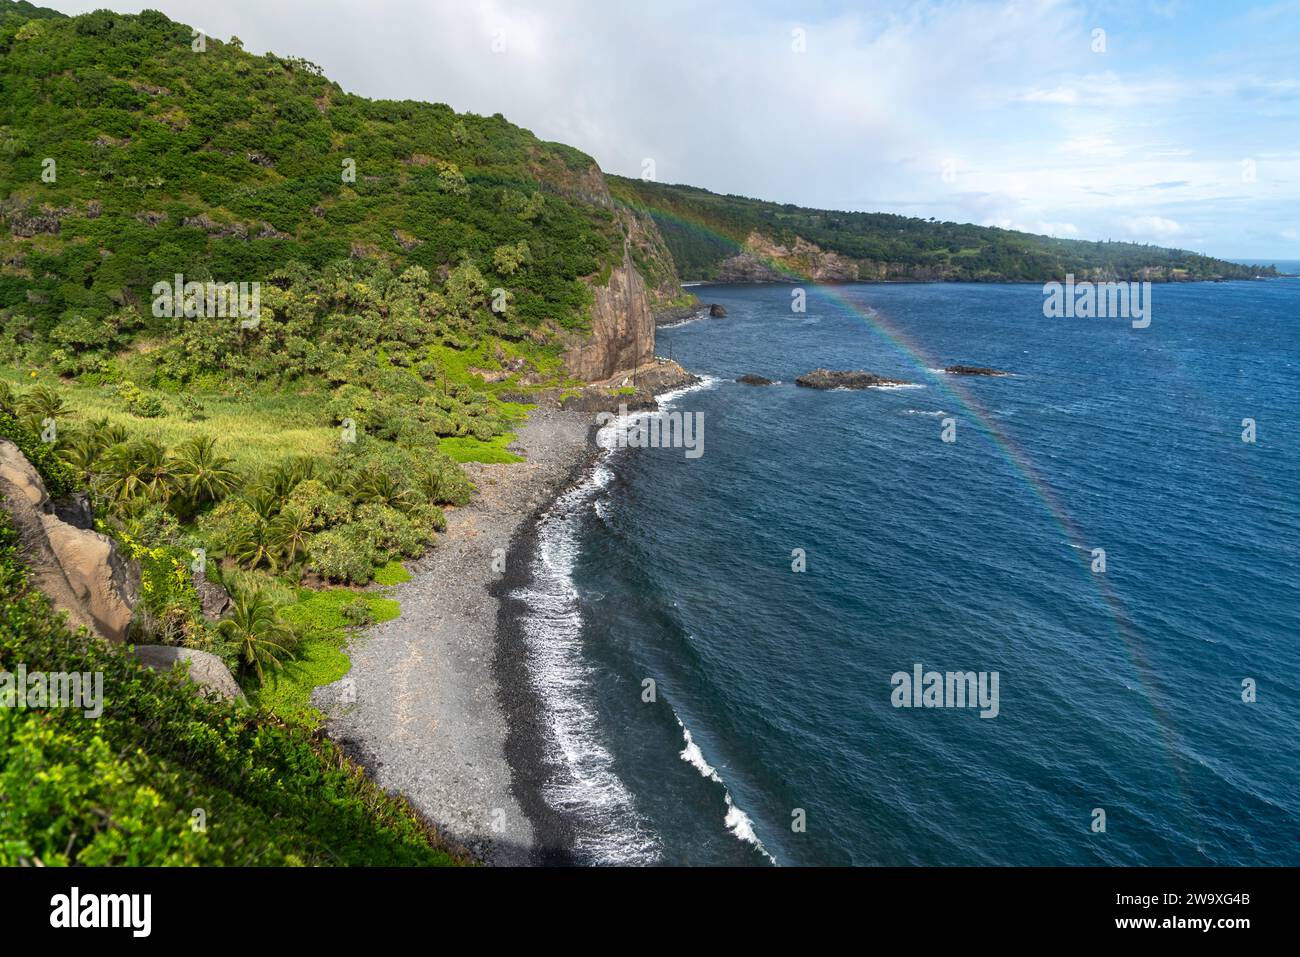 Questa appartata spiaggia di sabbia nera, incorniciata da una lussureggiante vegetazione tropicale e rocce laviche, è un luogo tranquillo lungo la costa meridionale di Maui vicino all'autostrada Piilani. Foto Stock